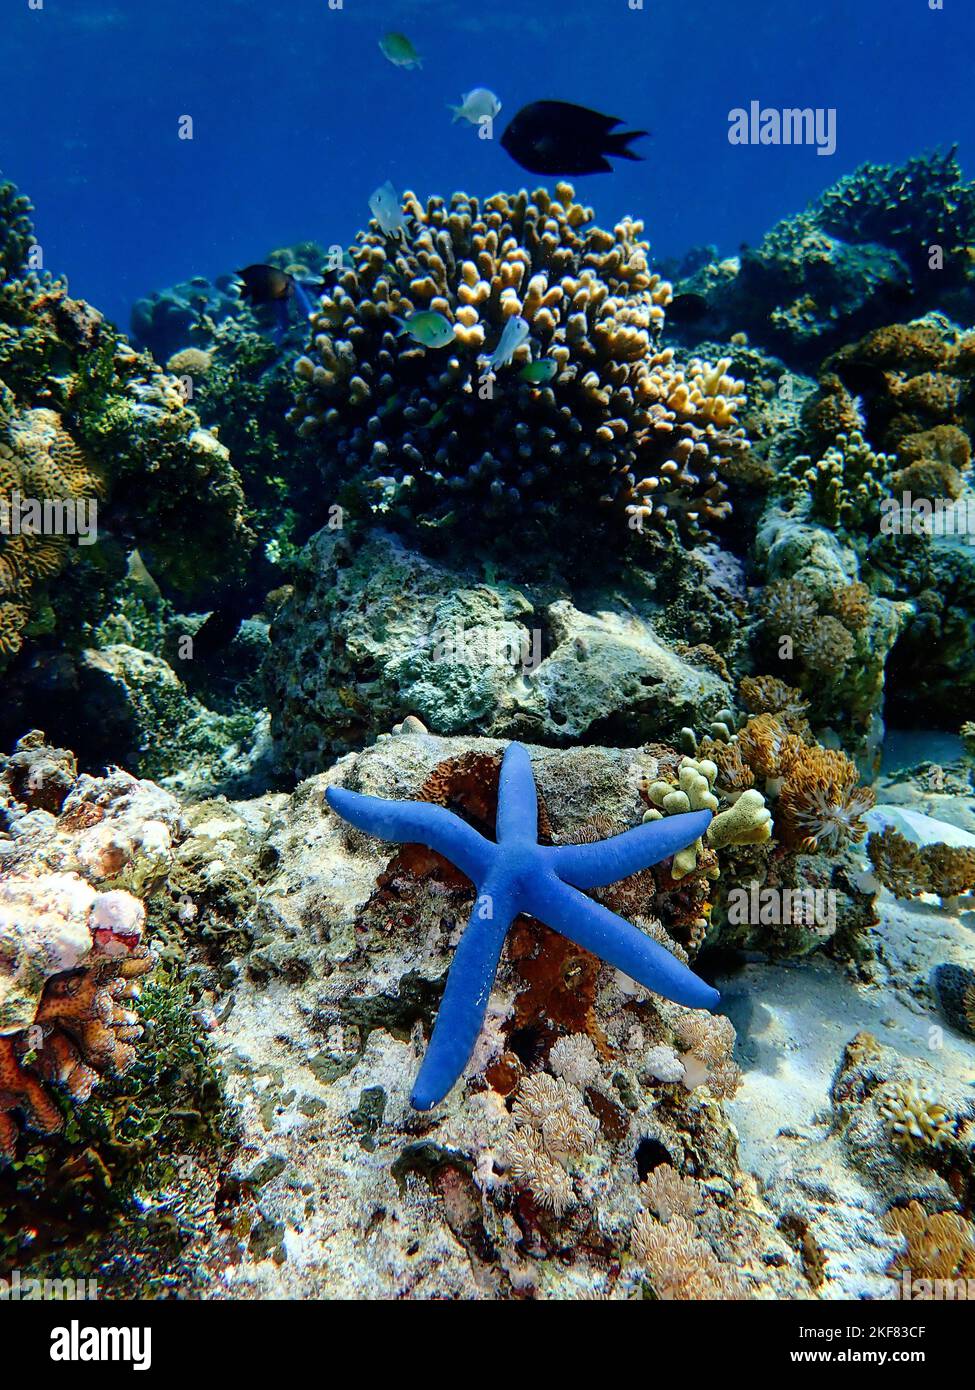 Indonesia Isla Alor - Vida Marina Estrella azul del mar - Linckia laevigata Foto de stock